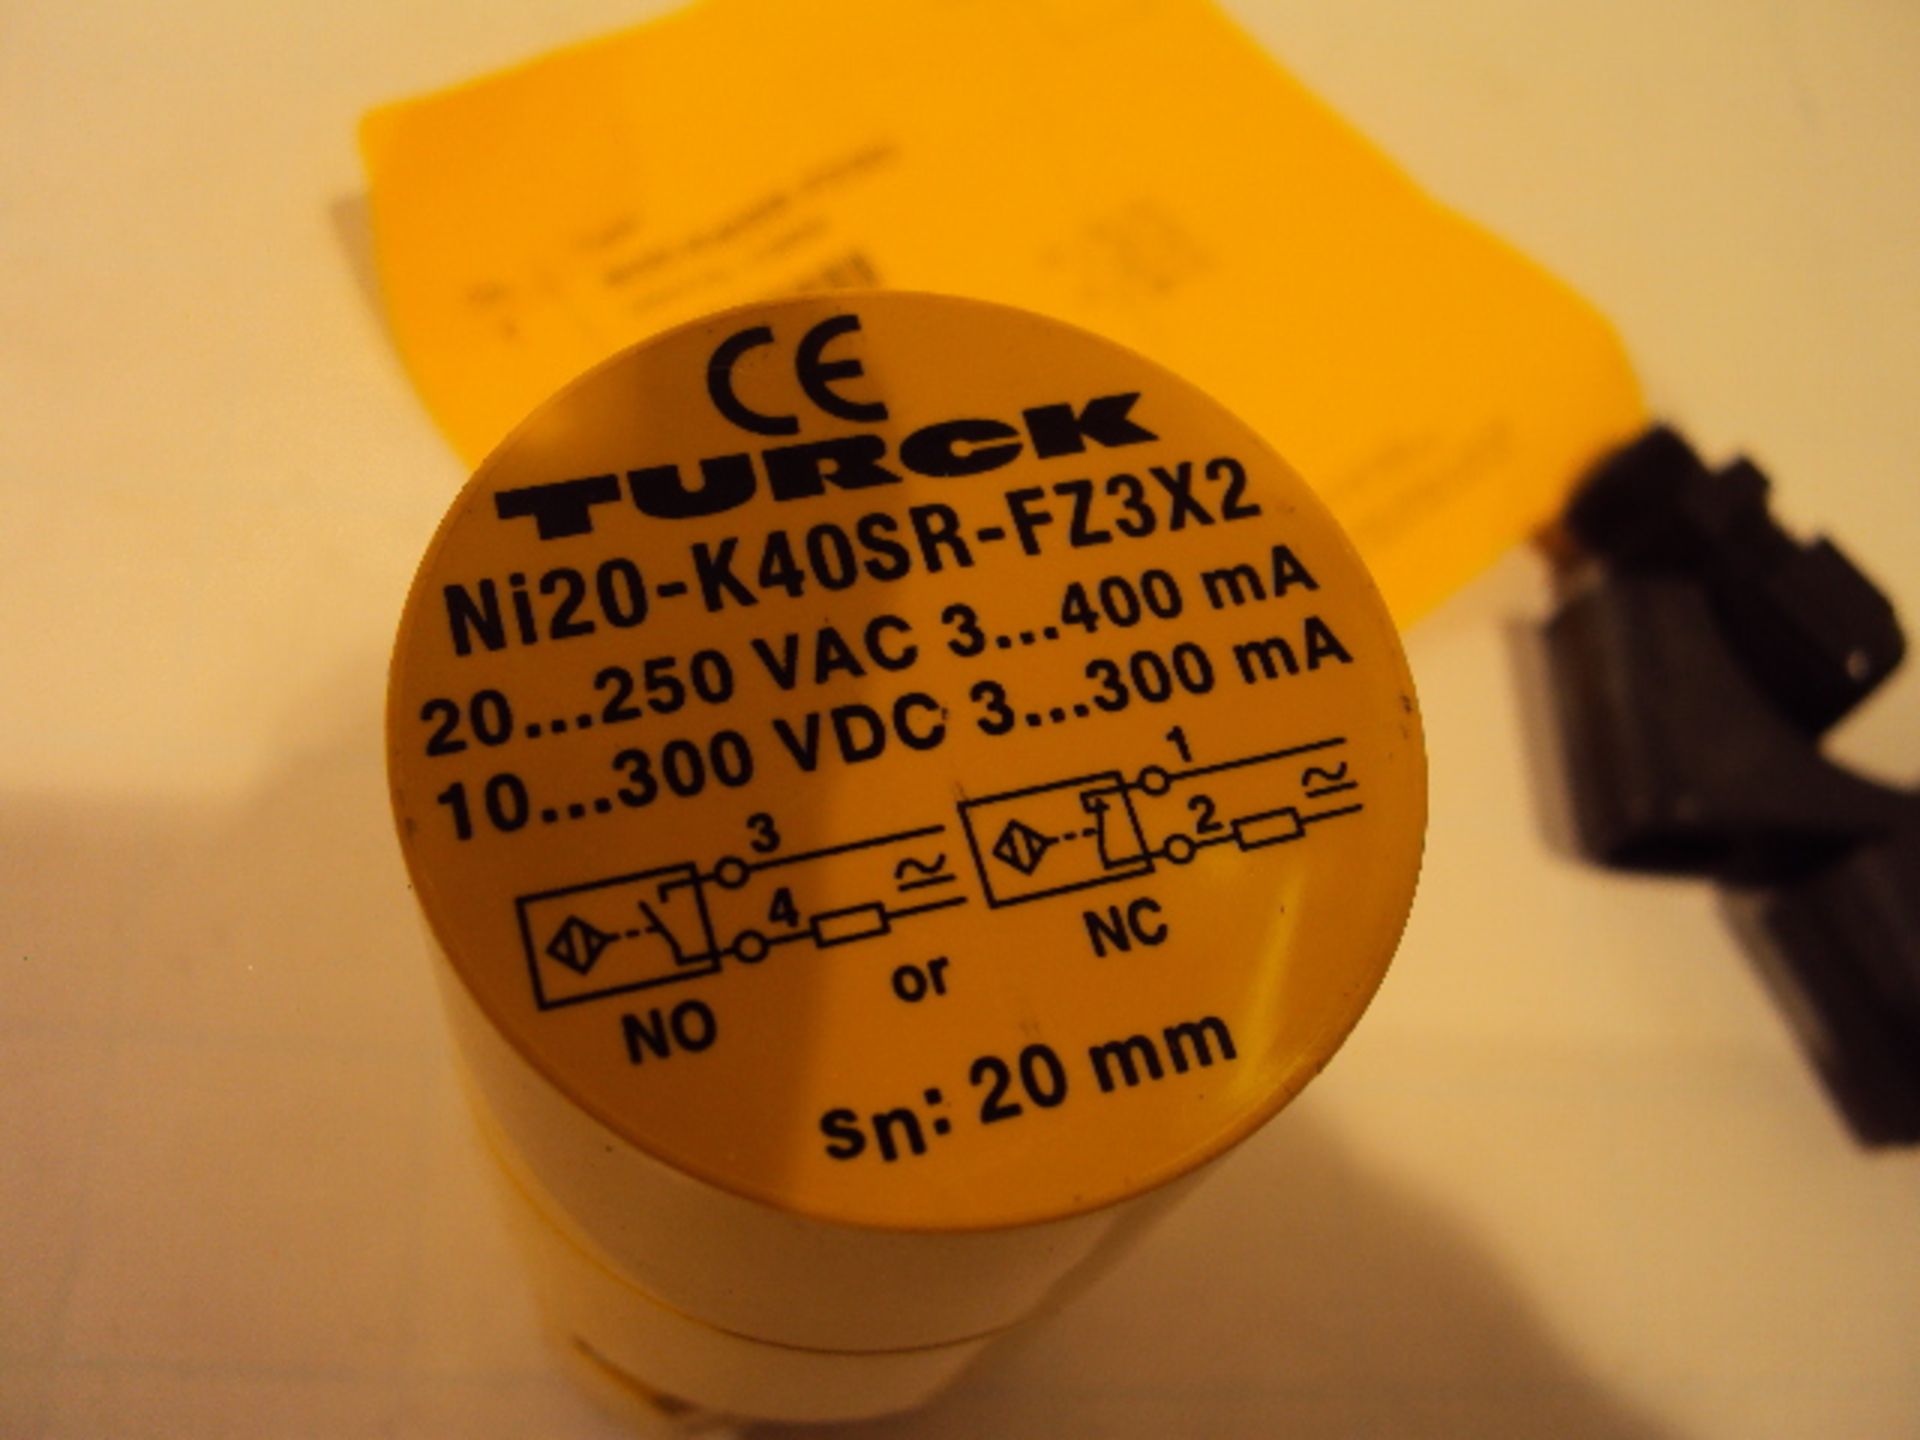 (3) Turck NI20-K40SR-FZ3X2 Proximity Sensors - Image 4 of 5